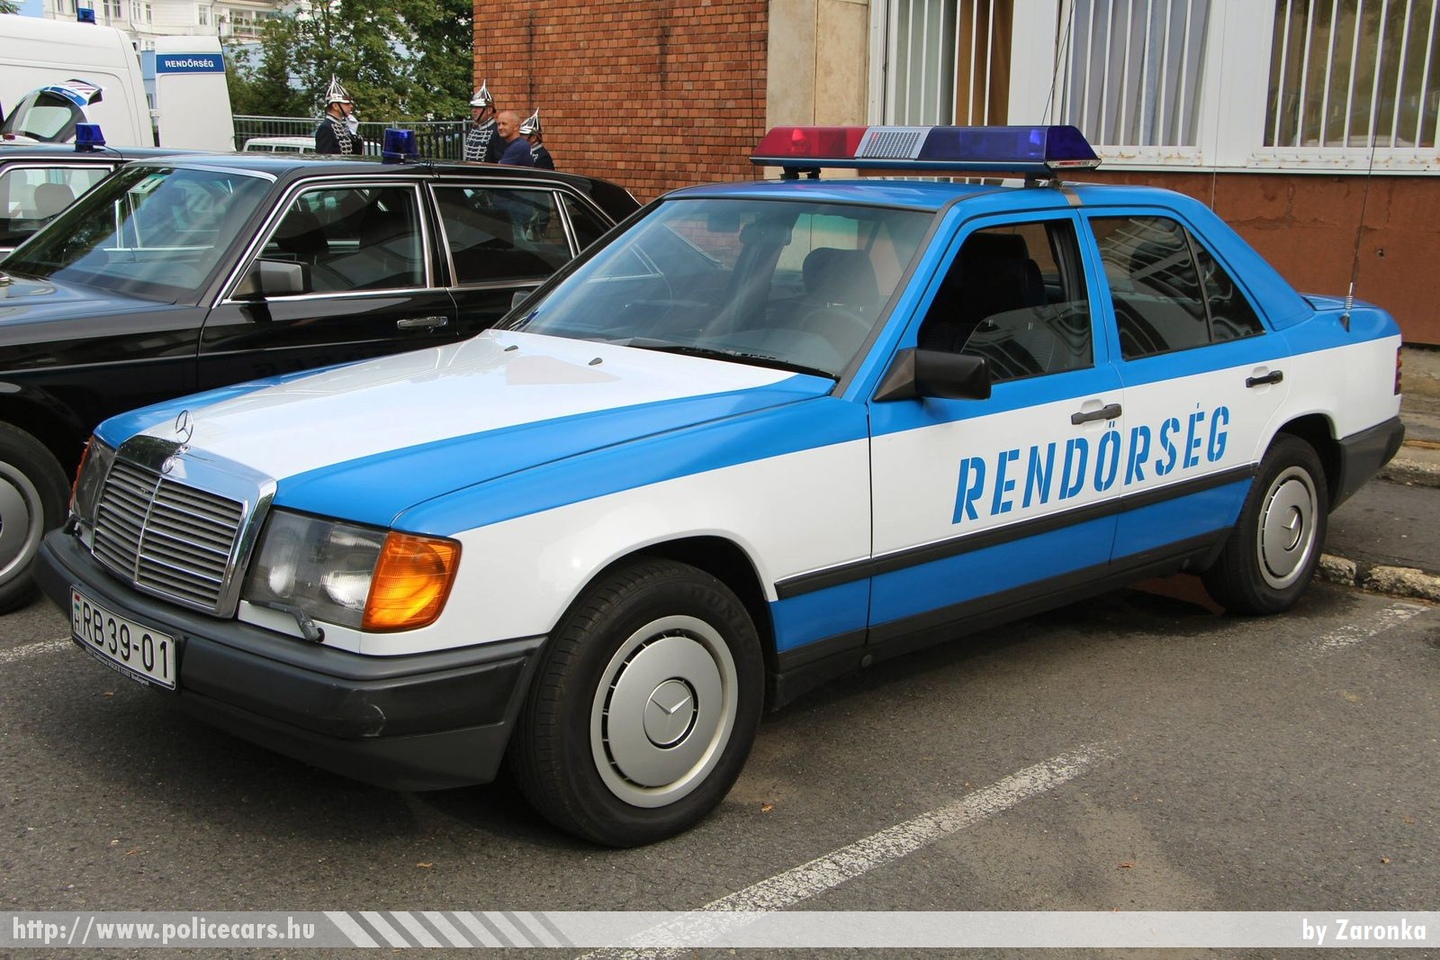 Mercedes E W124, fotó: Zaronka
Keywords: RB39-01 rendőrség rendőr rendőrautó magyar Magyarország  hungarian Hungary police policecar